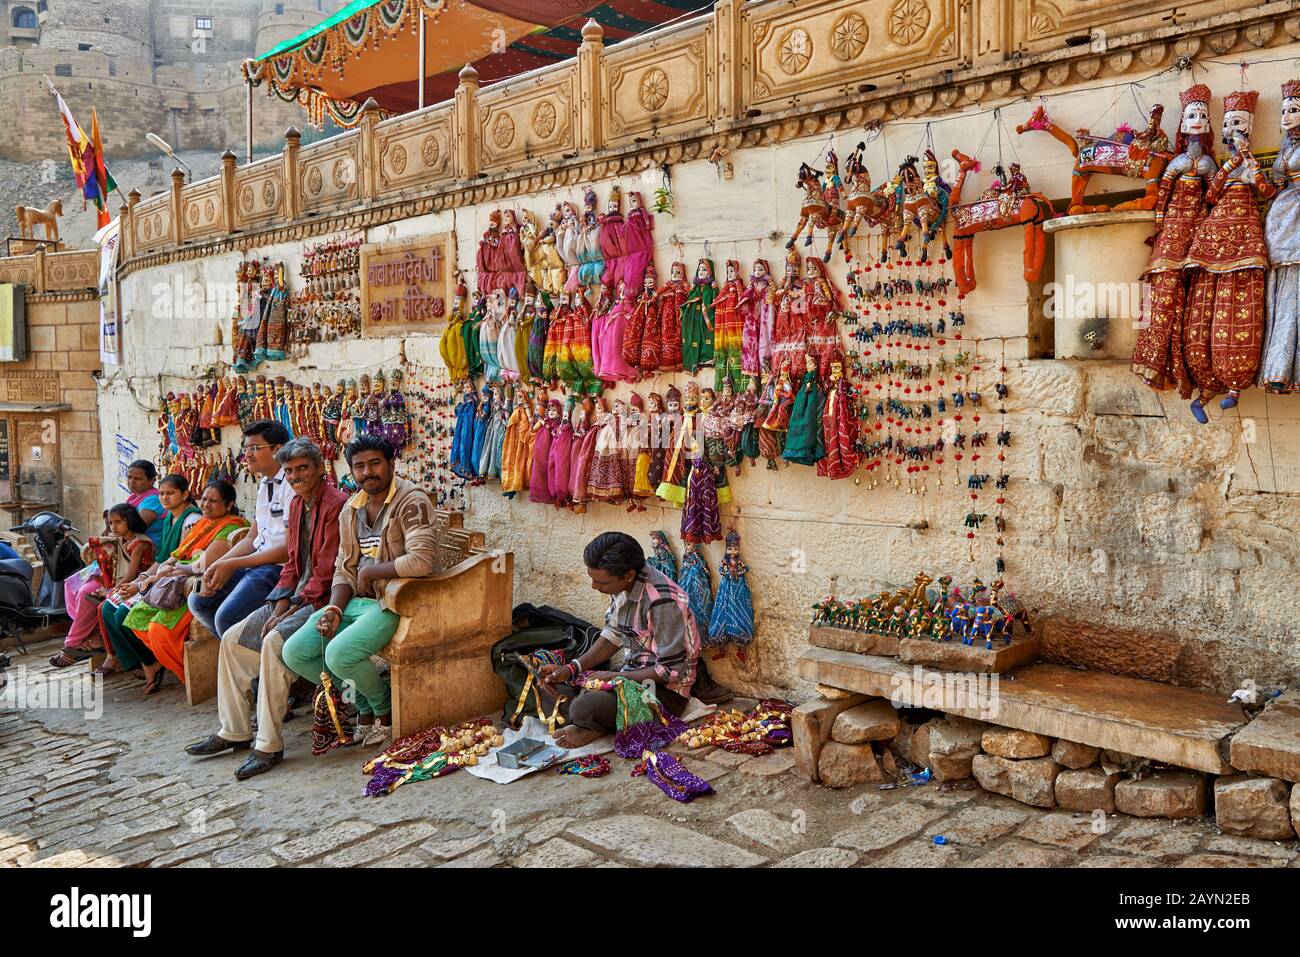 Las mujeres vestidas tradicionalmente venden recuerdos en las calles de Jaisalmer, Rajasthan, India Foto de stock